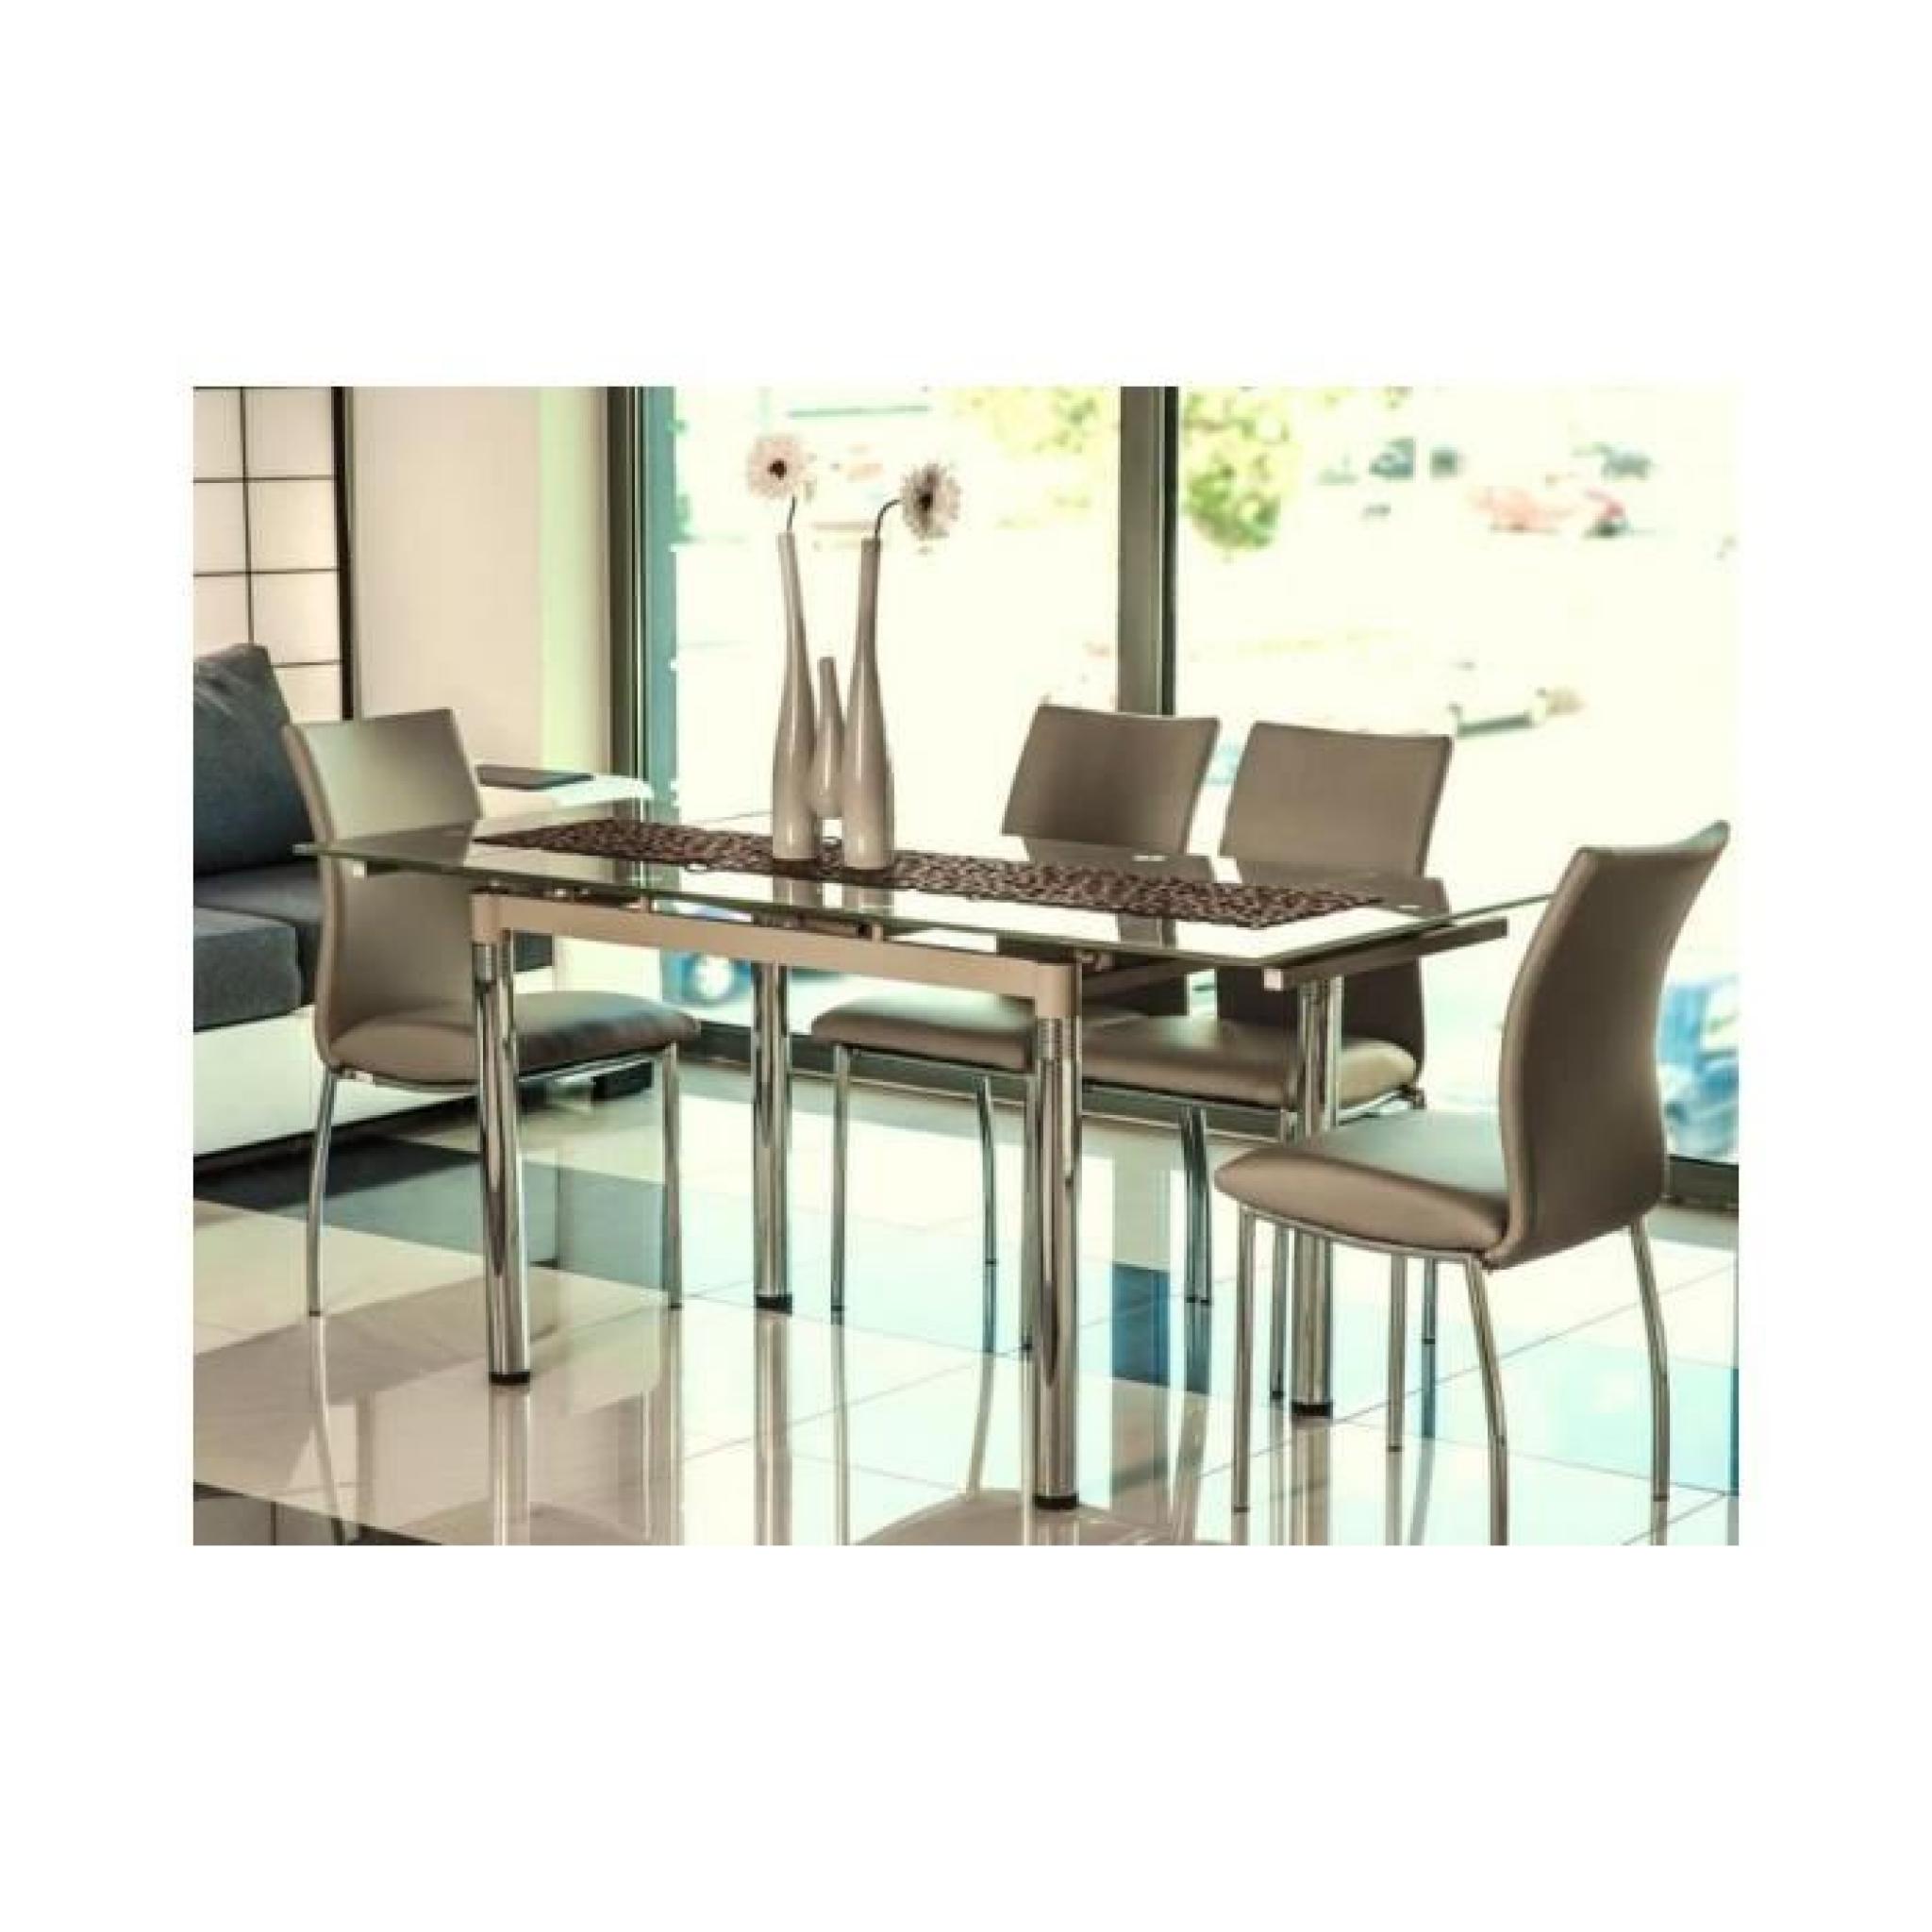 JUSThome GD-018 Table à rallonge Couleur : Beige foncé (H x l x L) : 75 x 74 x 110-170 cm